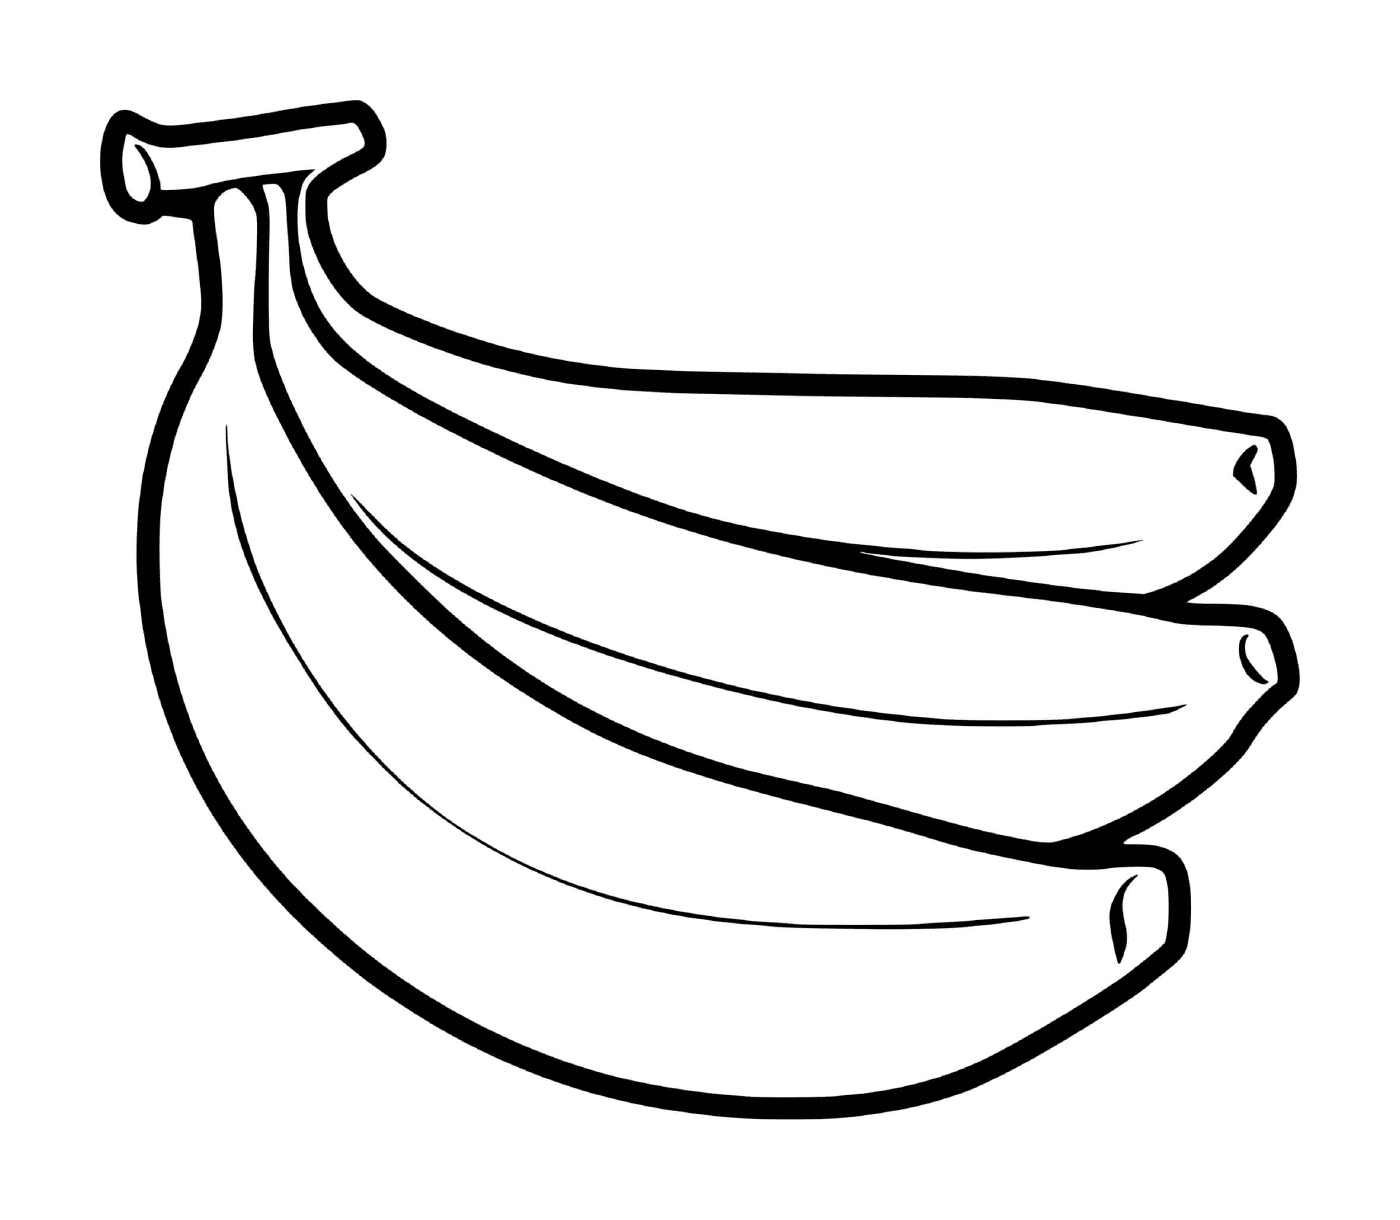  Ein Haufen Bananen auf dem Boden gepflanzt 